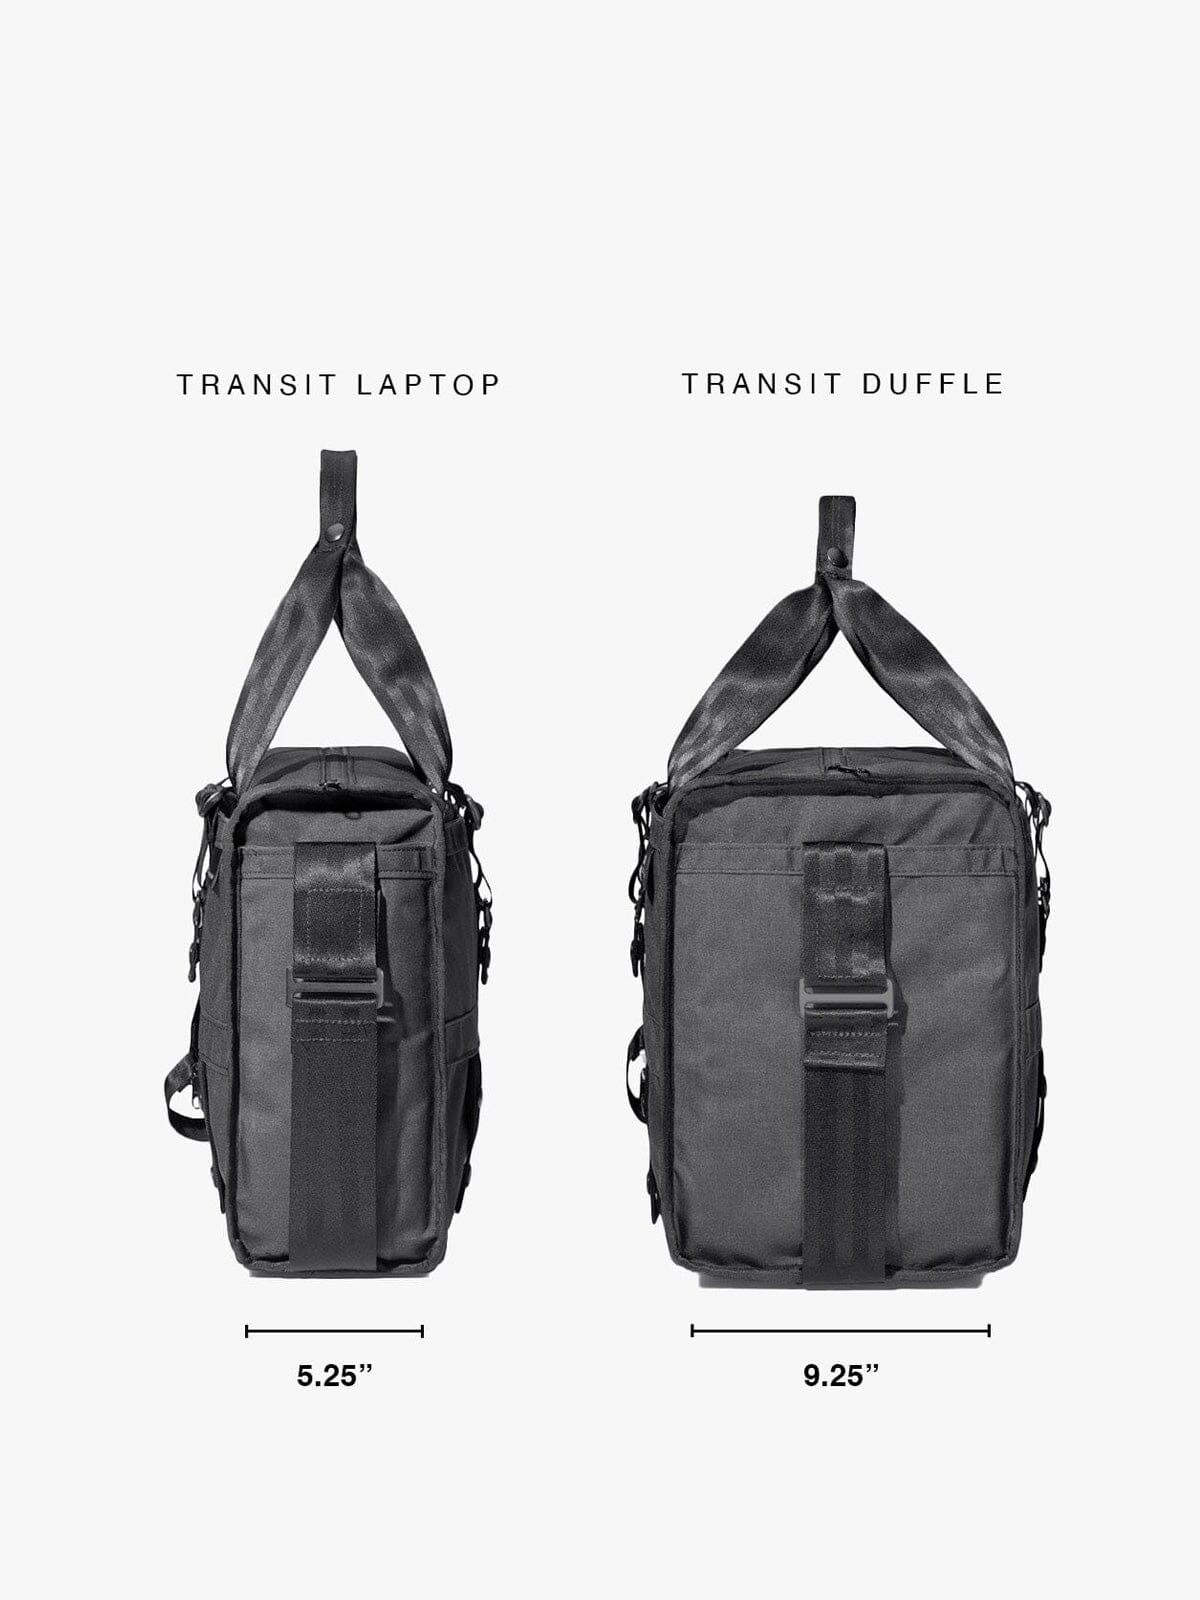 Transit Laptop Brief by Mission Workshop - Säänkestävät laukut ja tekniset vaatteet - San Francisco & Los Angeles - Kestävä - ikuinen takuu